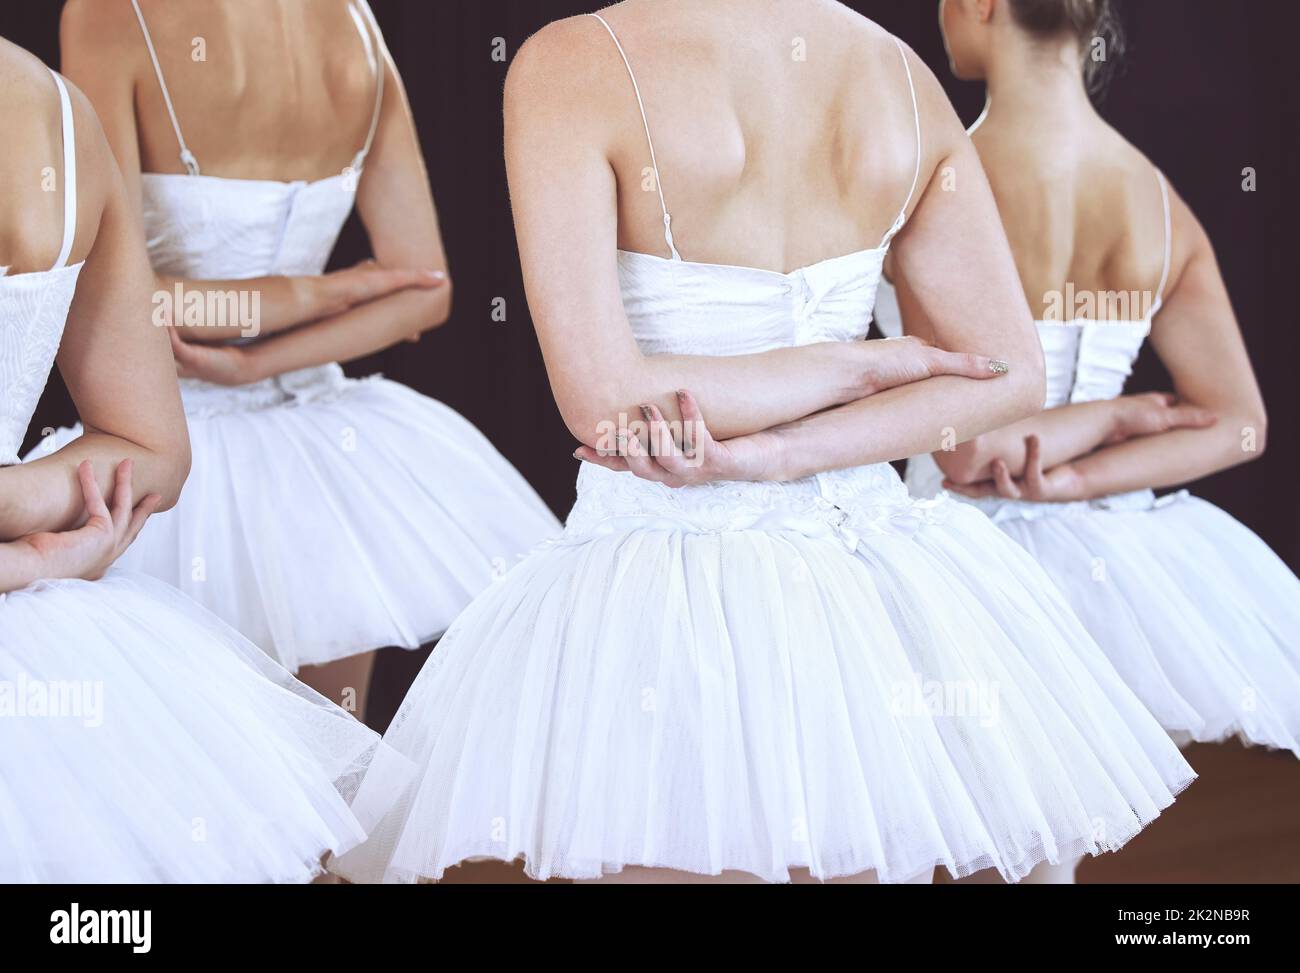 Ballett, Tanz und Kunst mit Frauen auf der Bühne für Performance, Theater und Training. Kreativ, motiviert und tanzt mit eleganter Ballerina Stockfoto